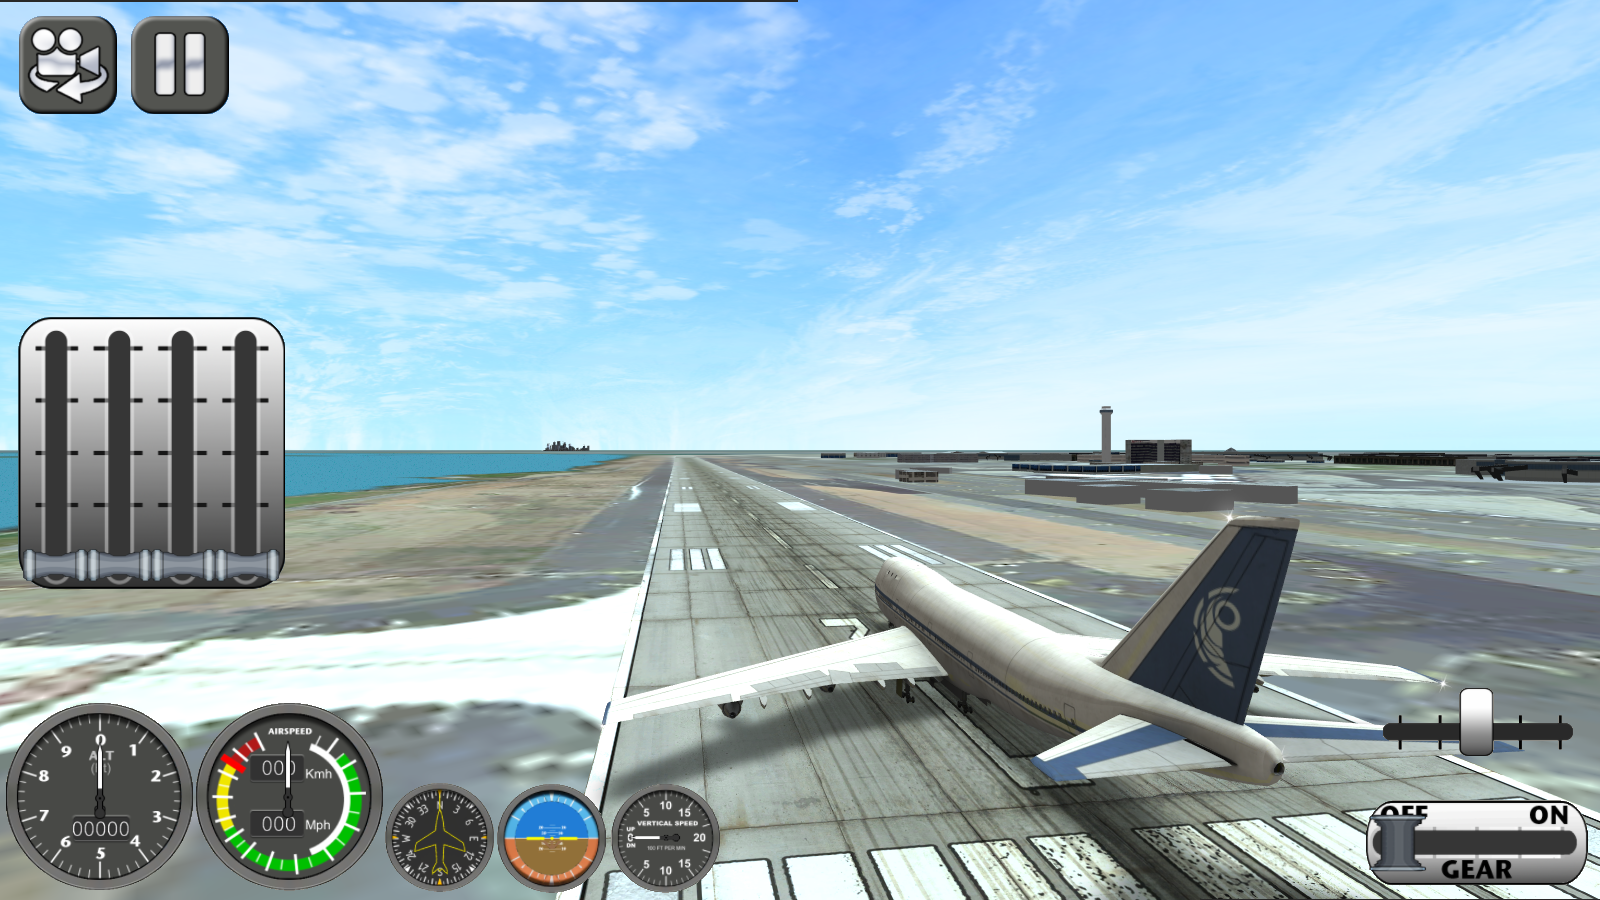 Игры симуляторы с модом. Игра Боинг симулятор. Летать на самолете игра. Реалистичная игра про самолеты. Симулятор полёта на самолёте.